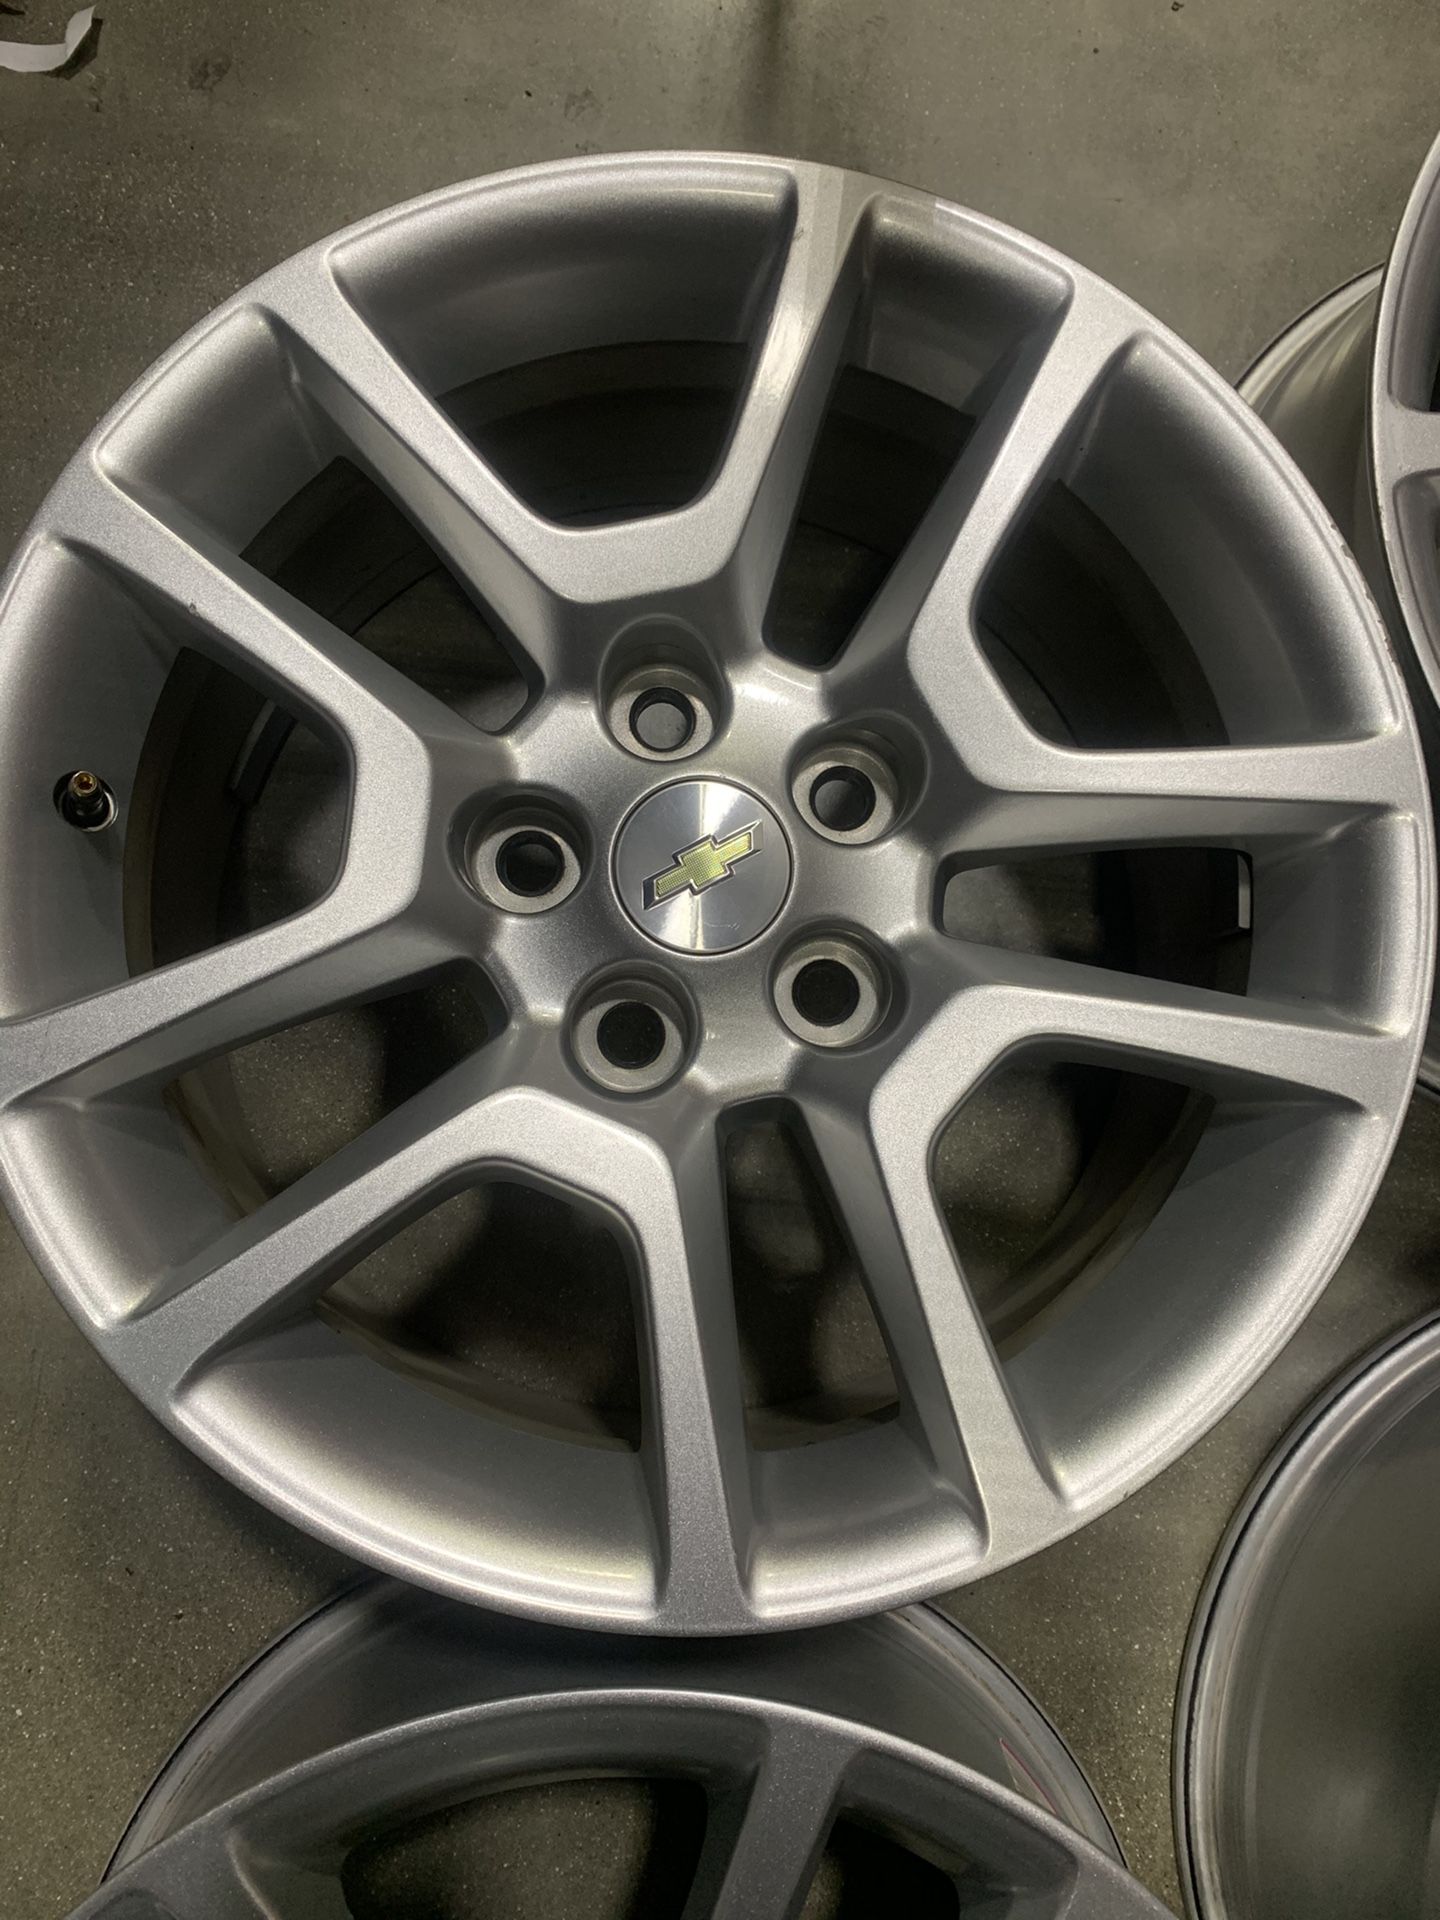 17x8 2016 Chevy Cruze wheels